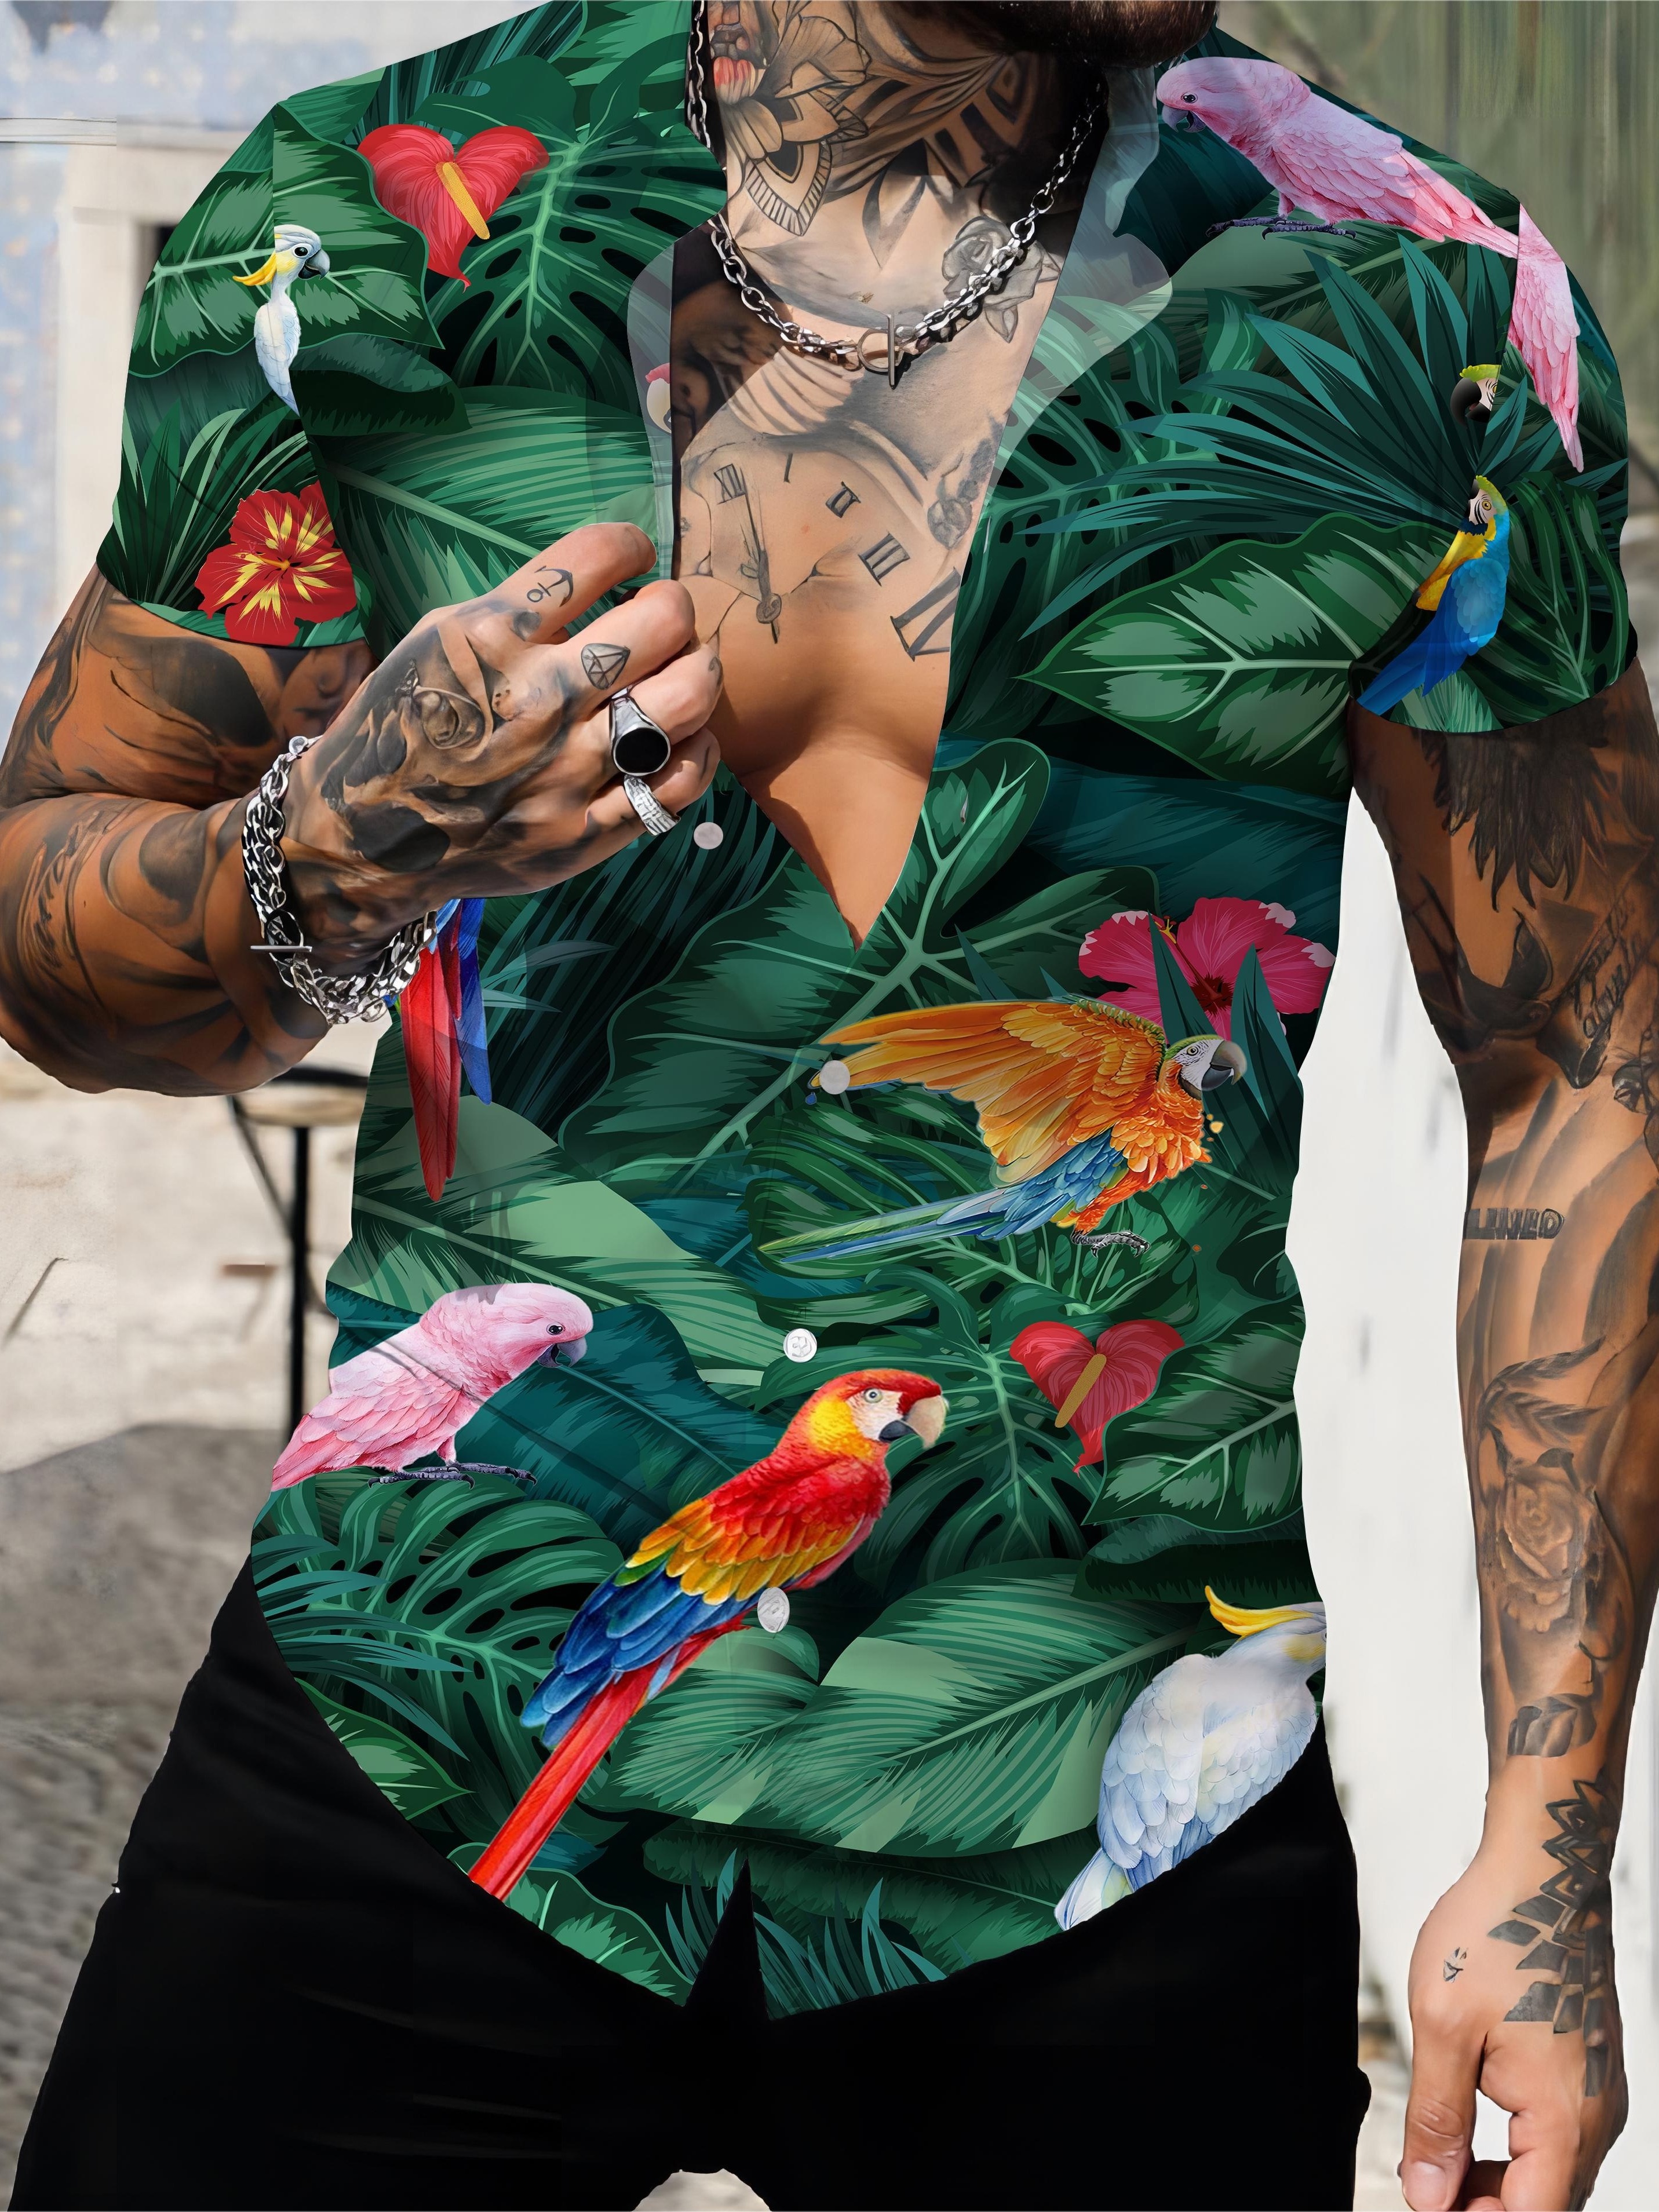 Men's Bird Shirts